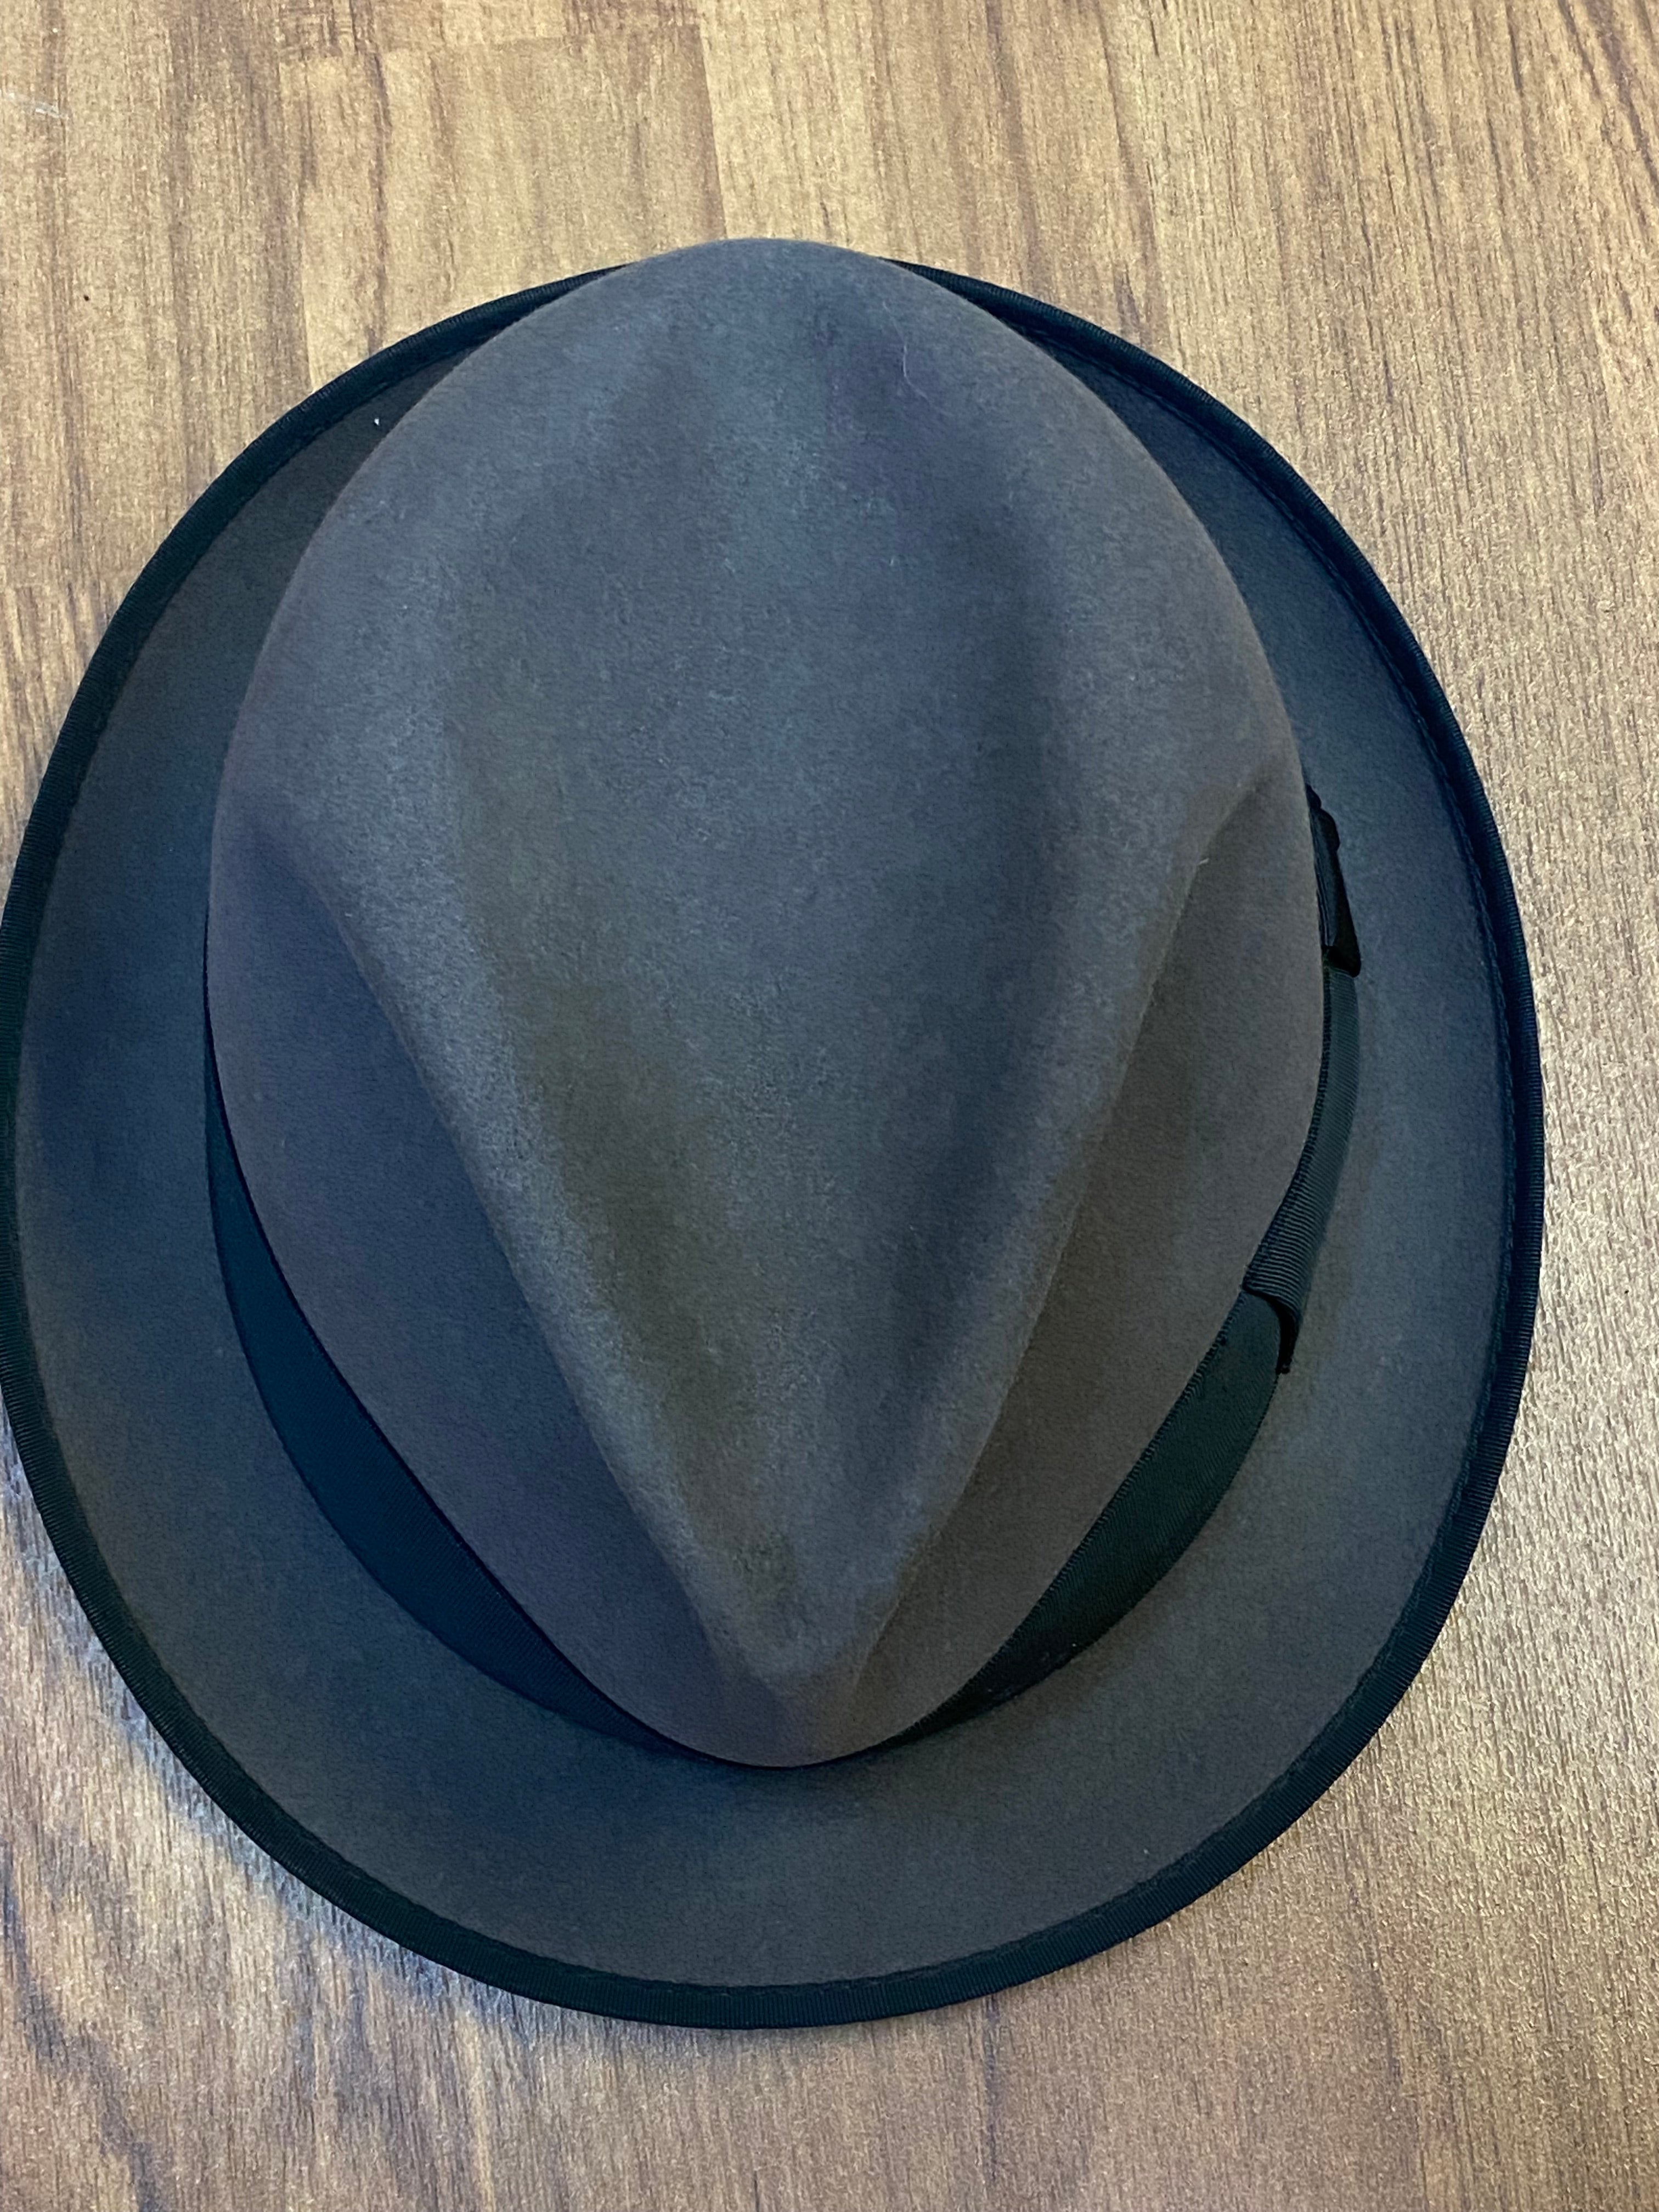 Hochwertiger Vintage Hut Herren grau/schwarz Gr.57 Fedora